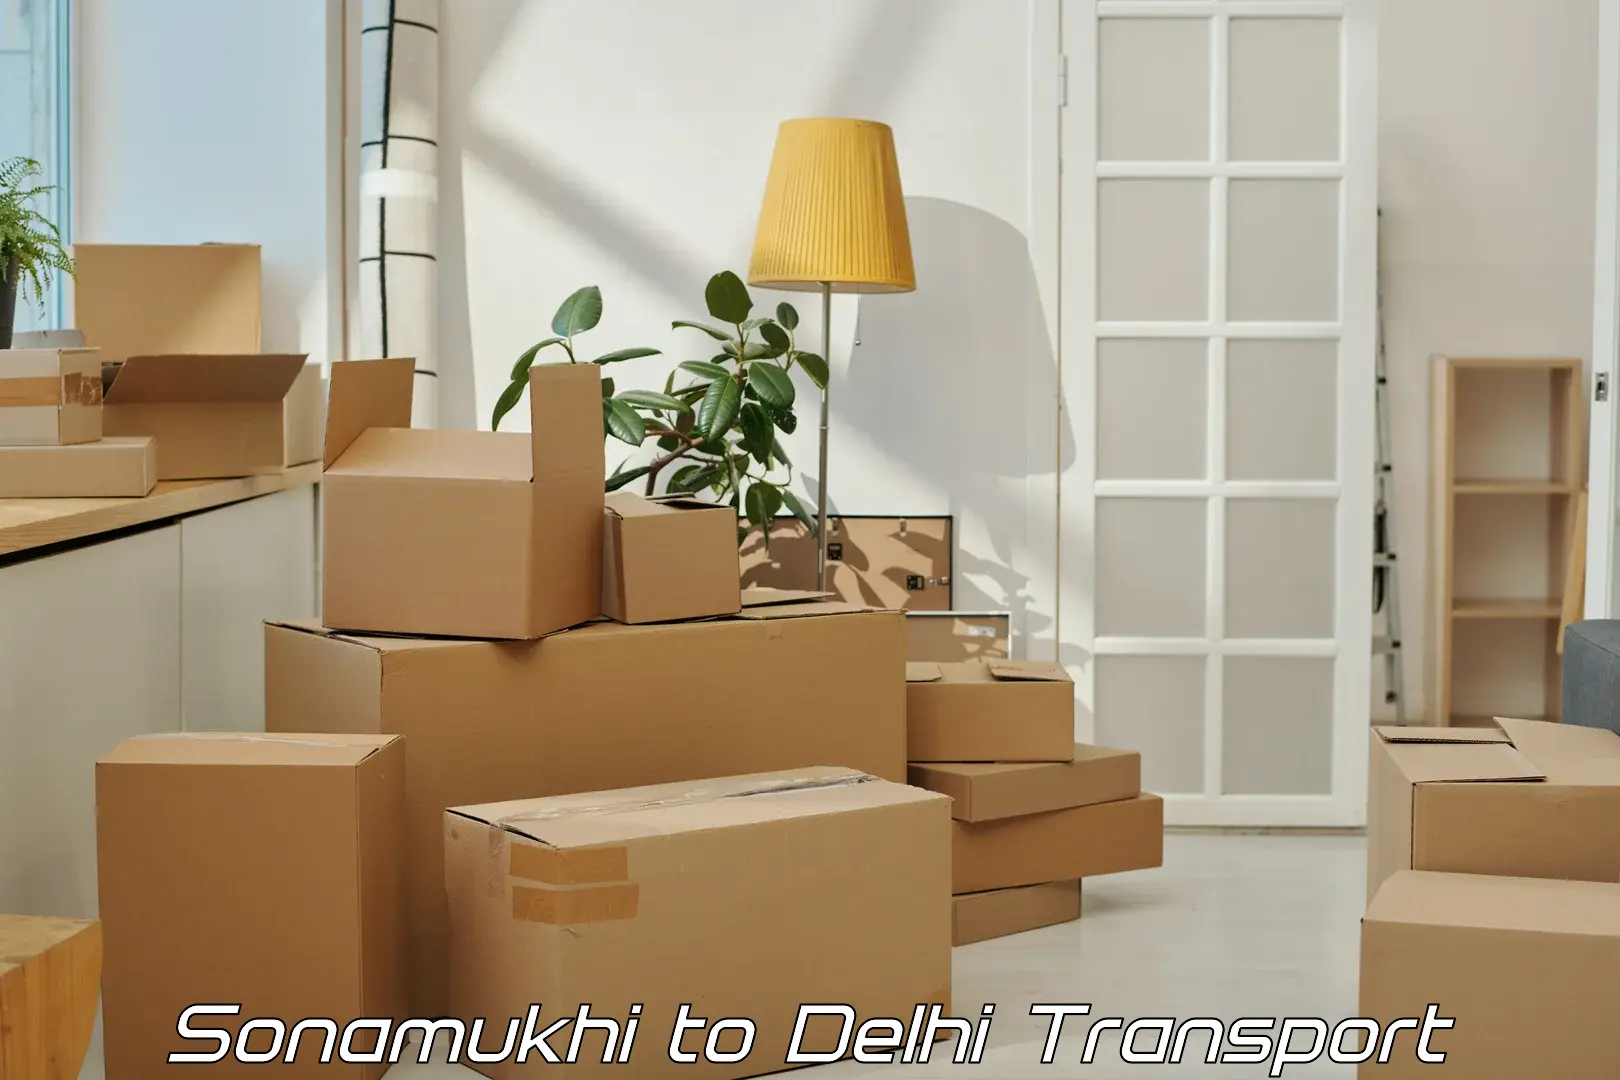 Online transport booking Sonamukhi to Guru Gobind Singh Indraprastha University New Delhi